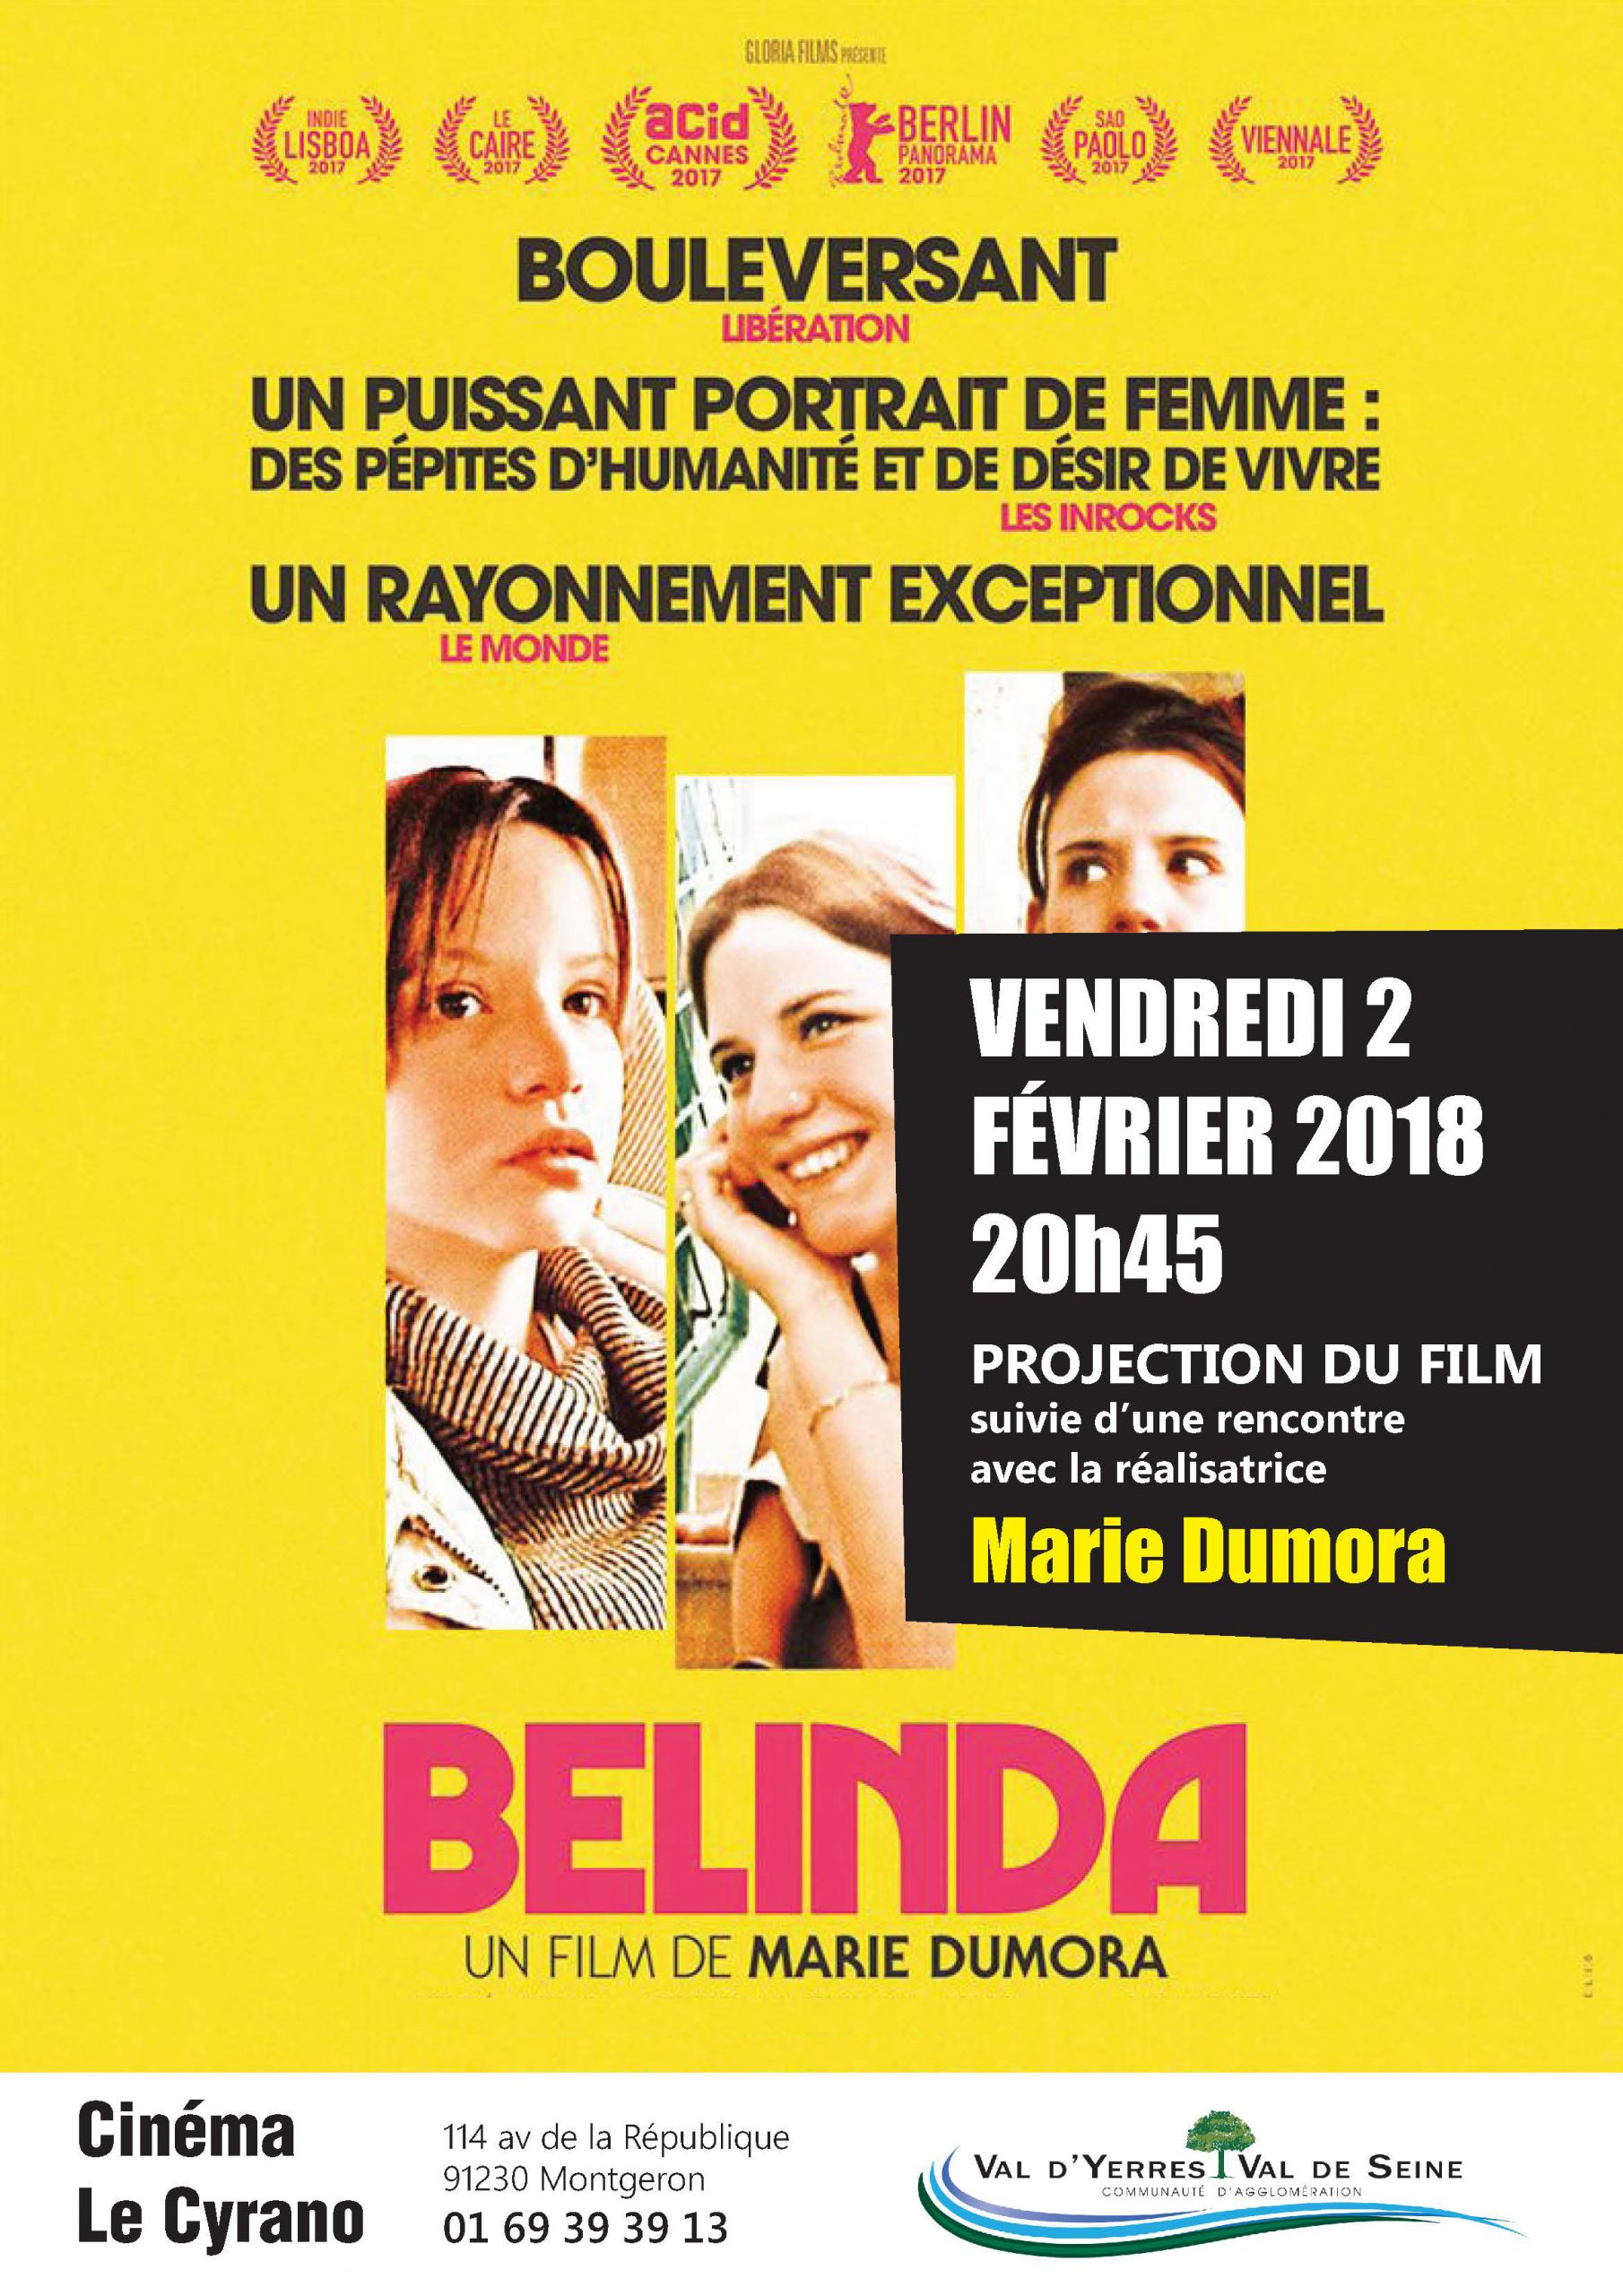 Soirée Cinéma : Projection de « Belinda » suivie d'une rencontre avec la réalisatrice Marie Dumora : vendredi 2 février